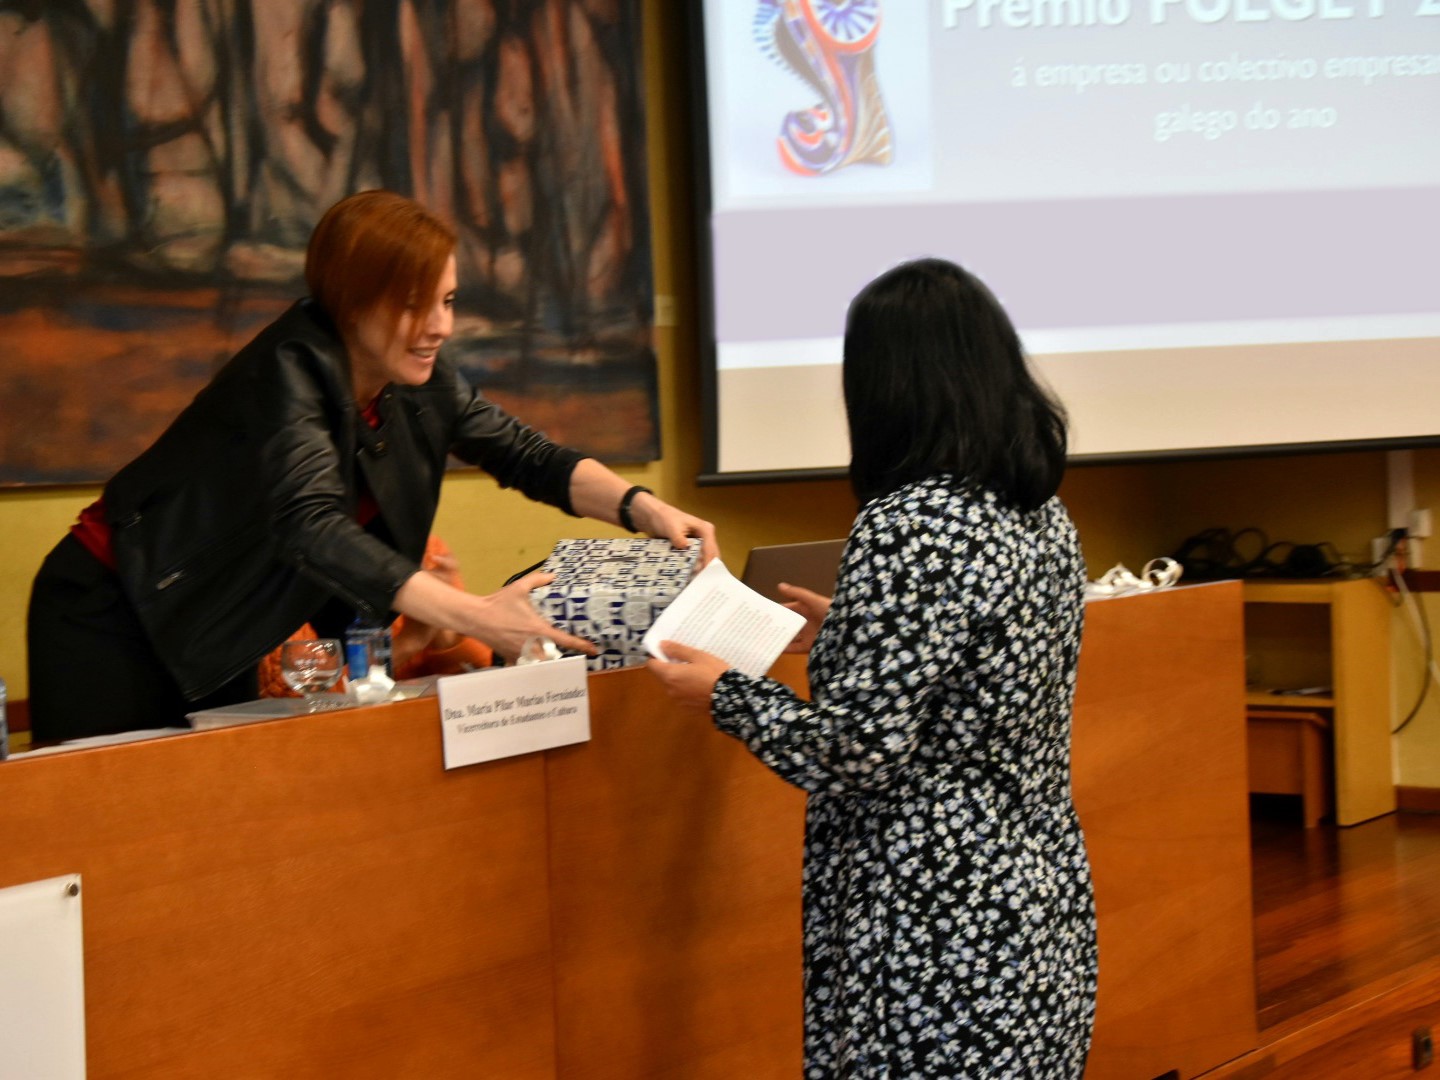 Recogida del premio de la mano de la vicerrectora de la USC, María Pilar Murias.